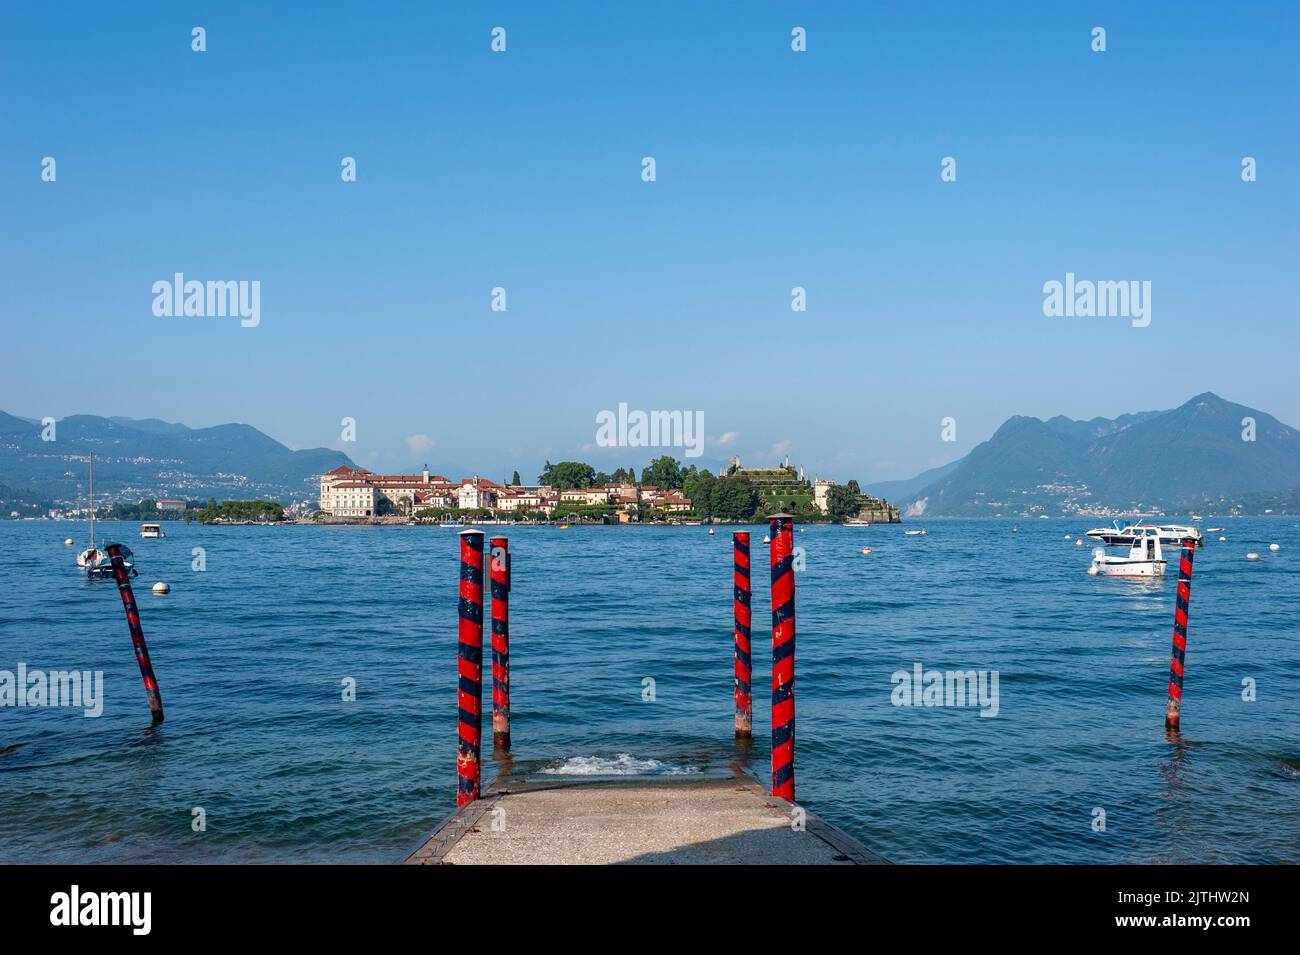 View over Lake Maggiore to Isola Bella, Stresa, Lake Maggiore, Piedmont, Italy, Europe Stock Photo